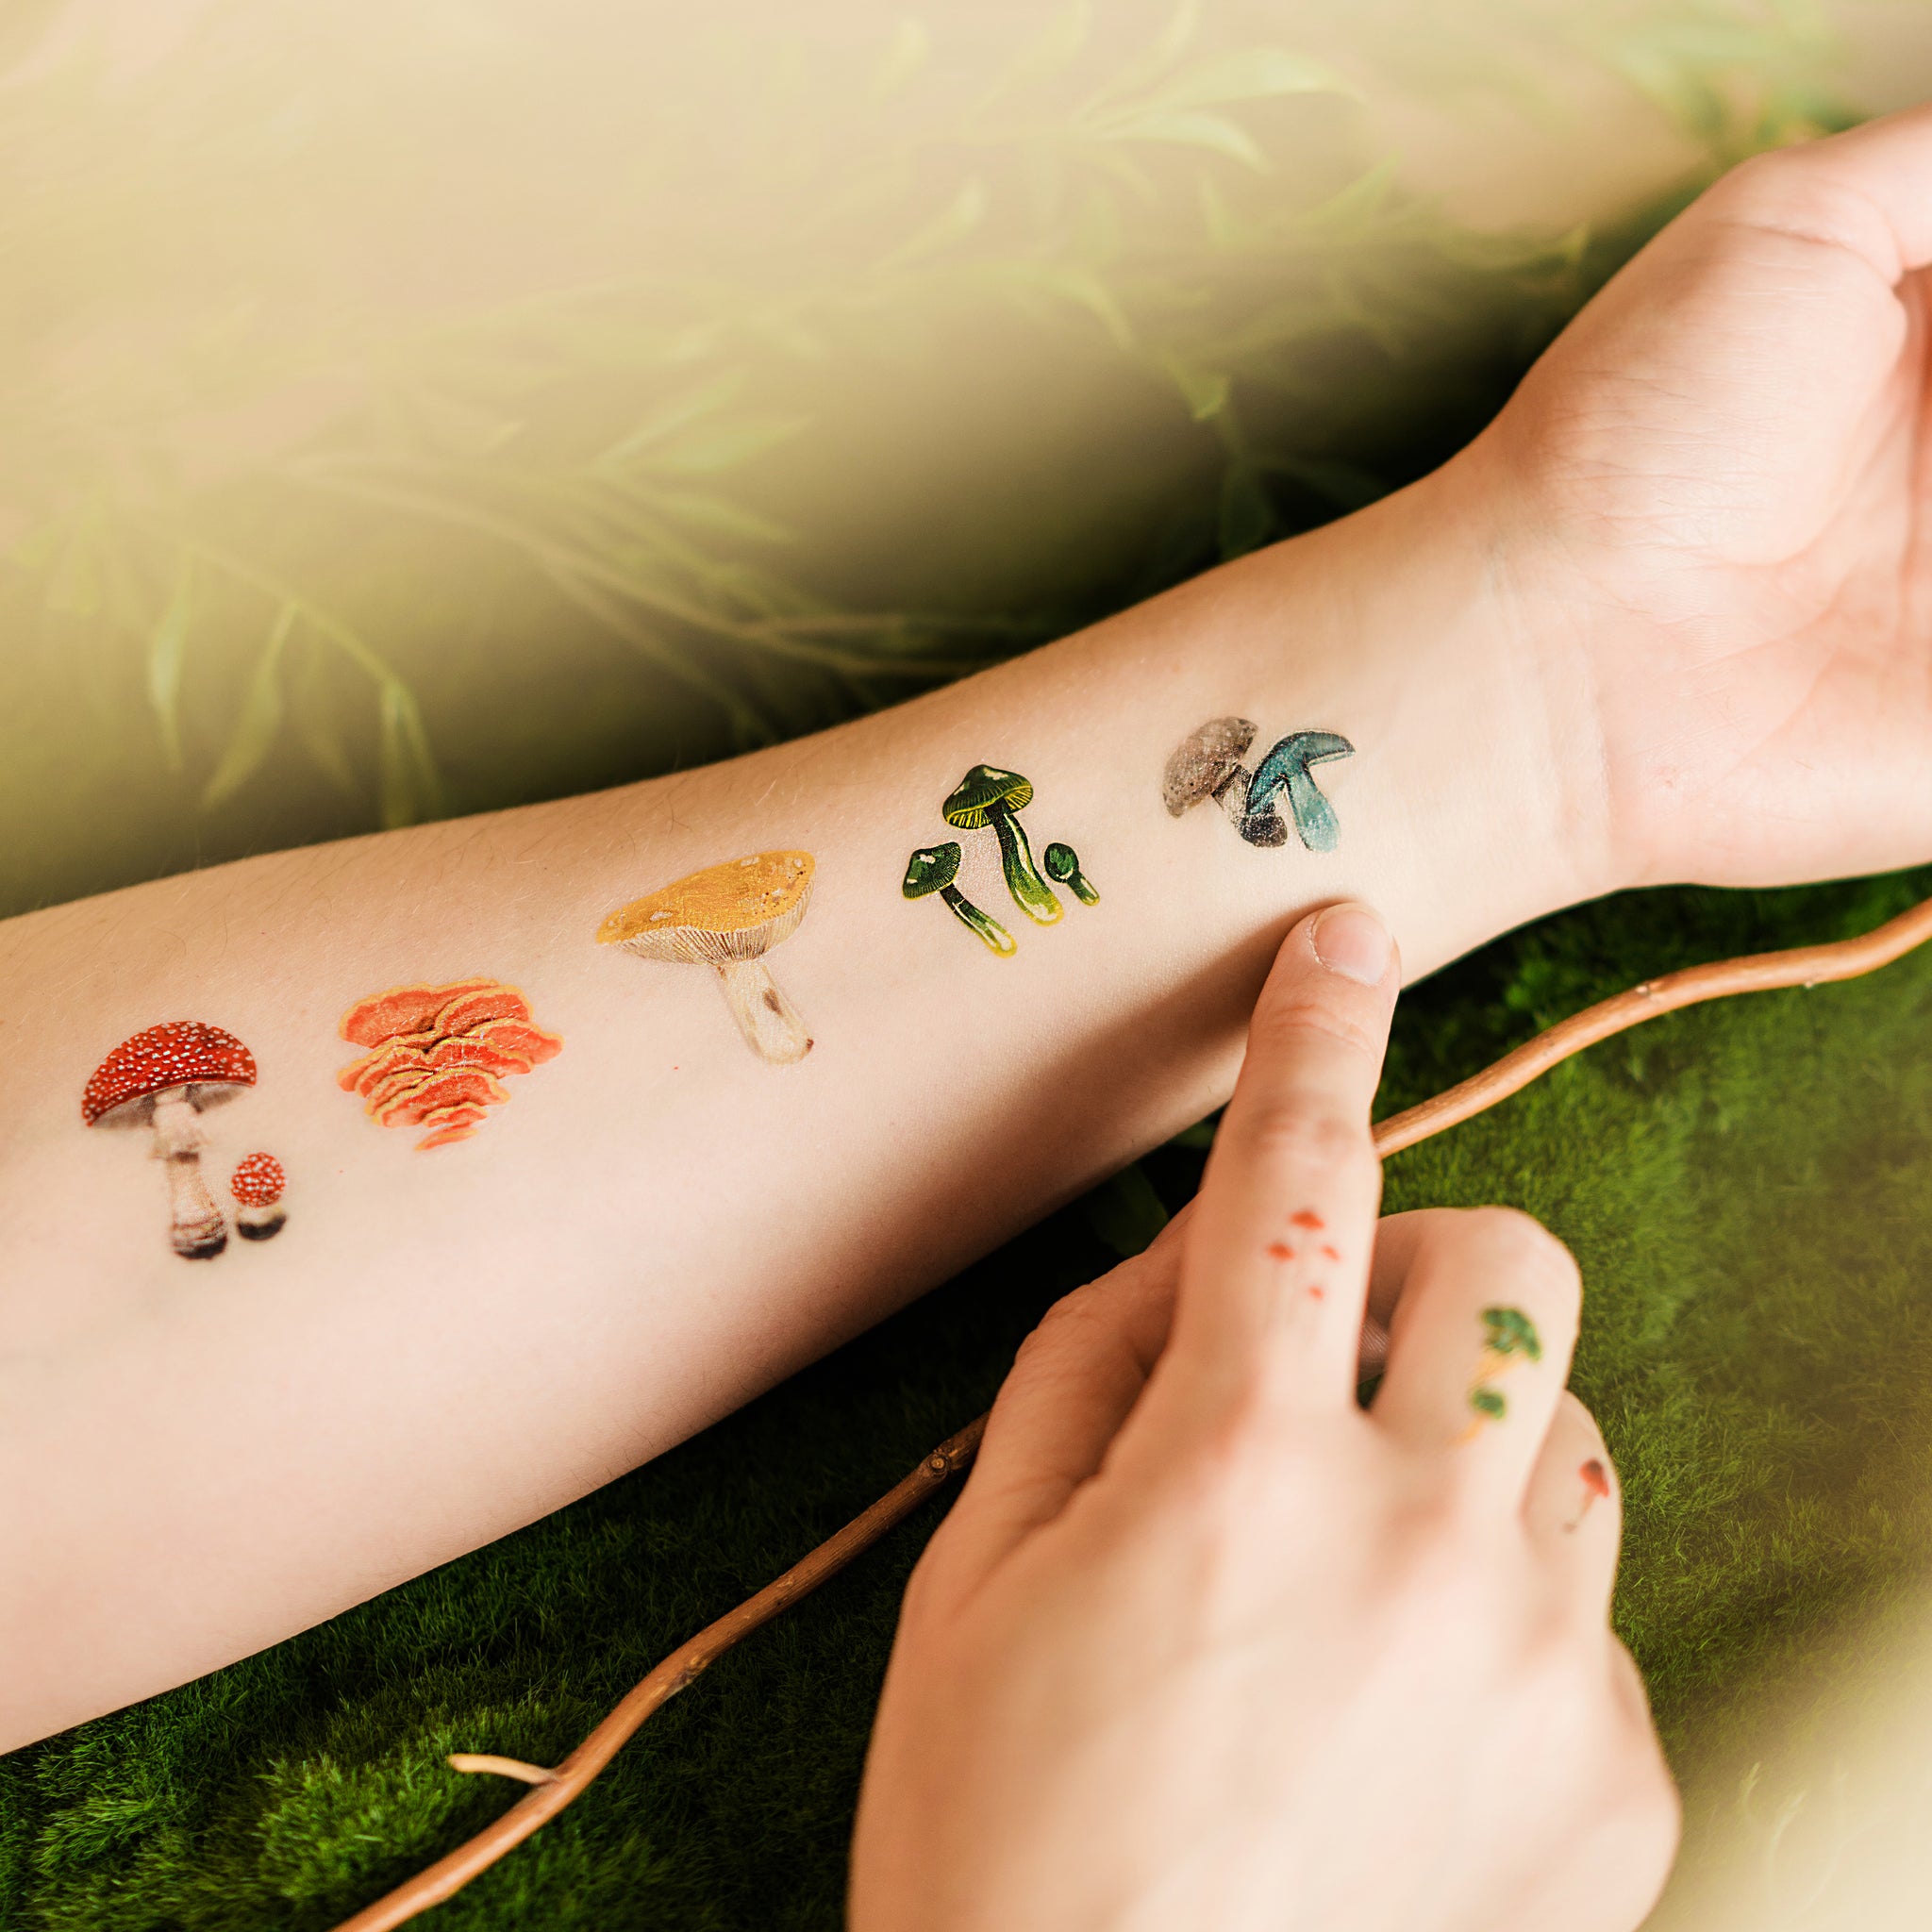 140 Clip Art Of A Trippy Mushroom Tattoos Illustrations RoyaltyFree  Vector Graphics  Clip Art  iStock